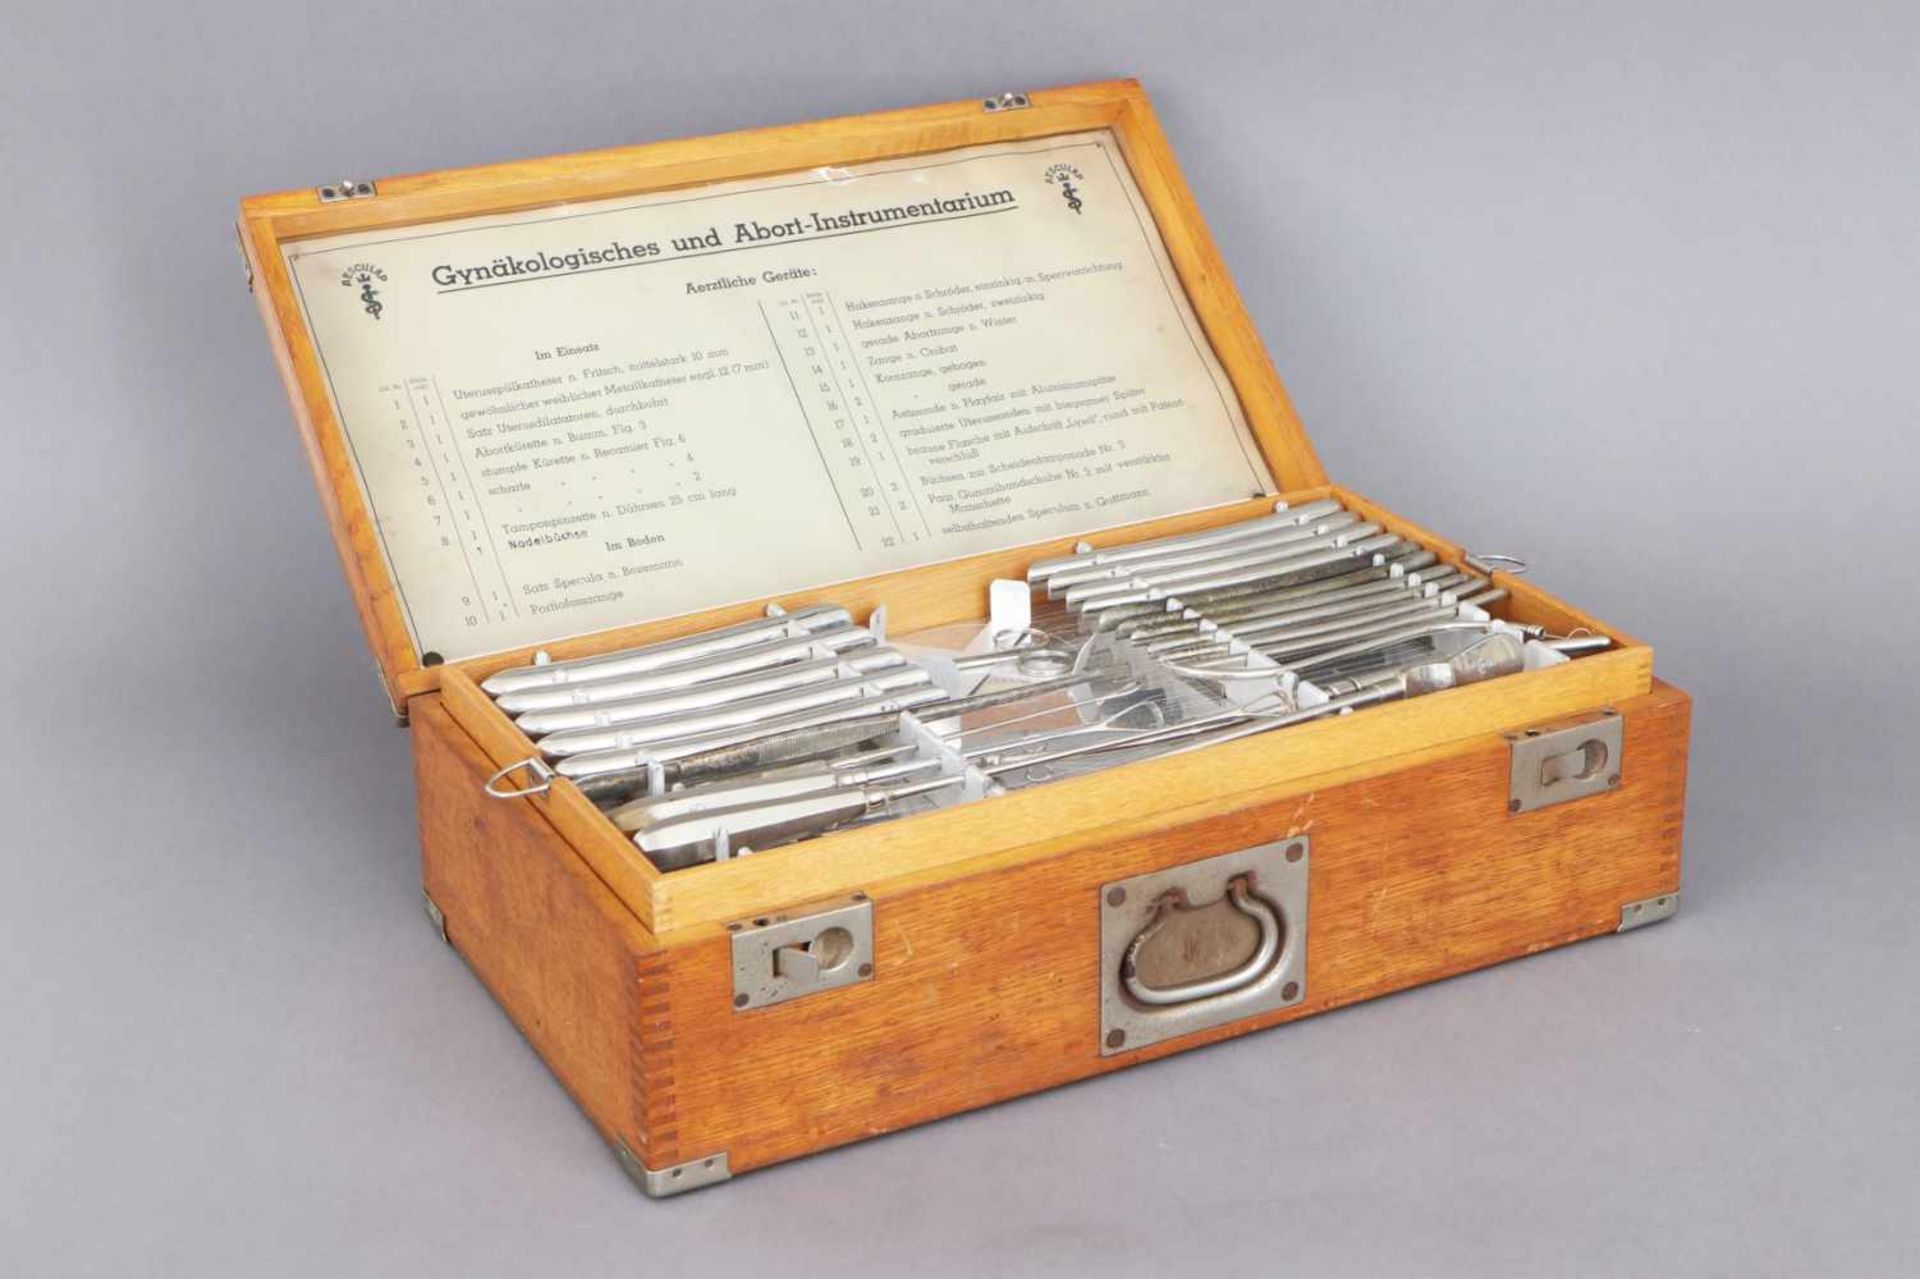 Gynäkologisches und Abort- InstrumentariumHersteller Aesculap, um 1920, Vielzahl Instrumente und